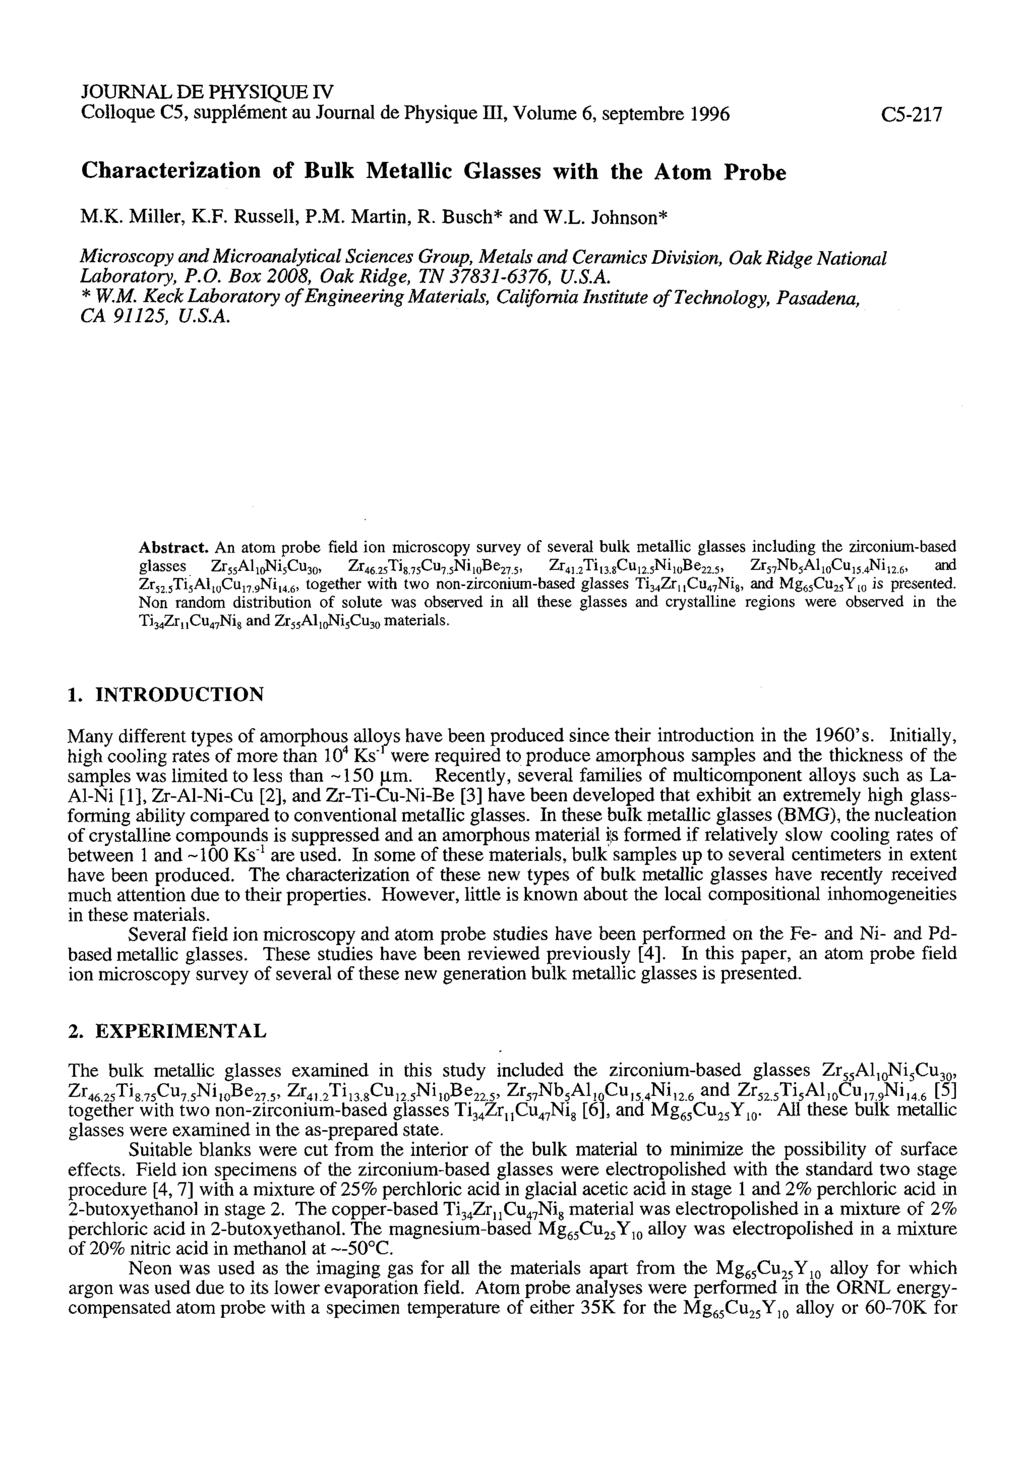 JOURNAL DE PHYSIQUE IV Colloque C5, supplkment au Journal de Physique 111, Volume 6, septembre 1996 Characterization of Bulk Metallic Glasses with the Atom Probe M.K. Miller, K.F. Russell, P.M. Martin, R.